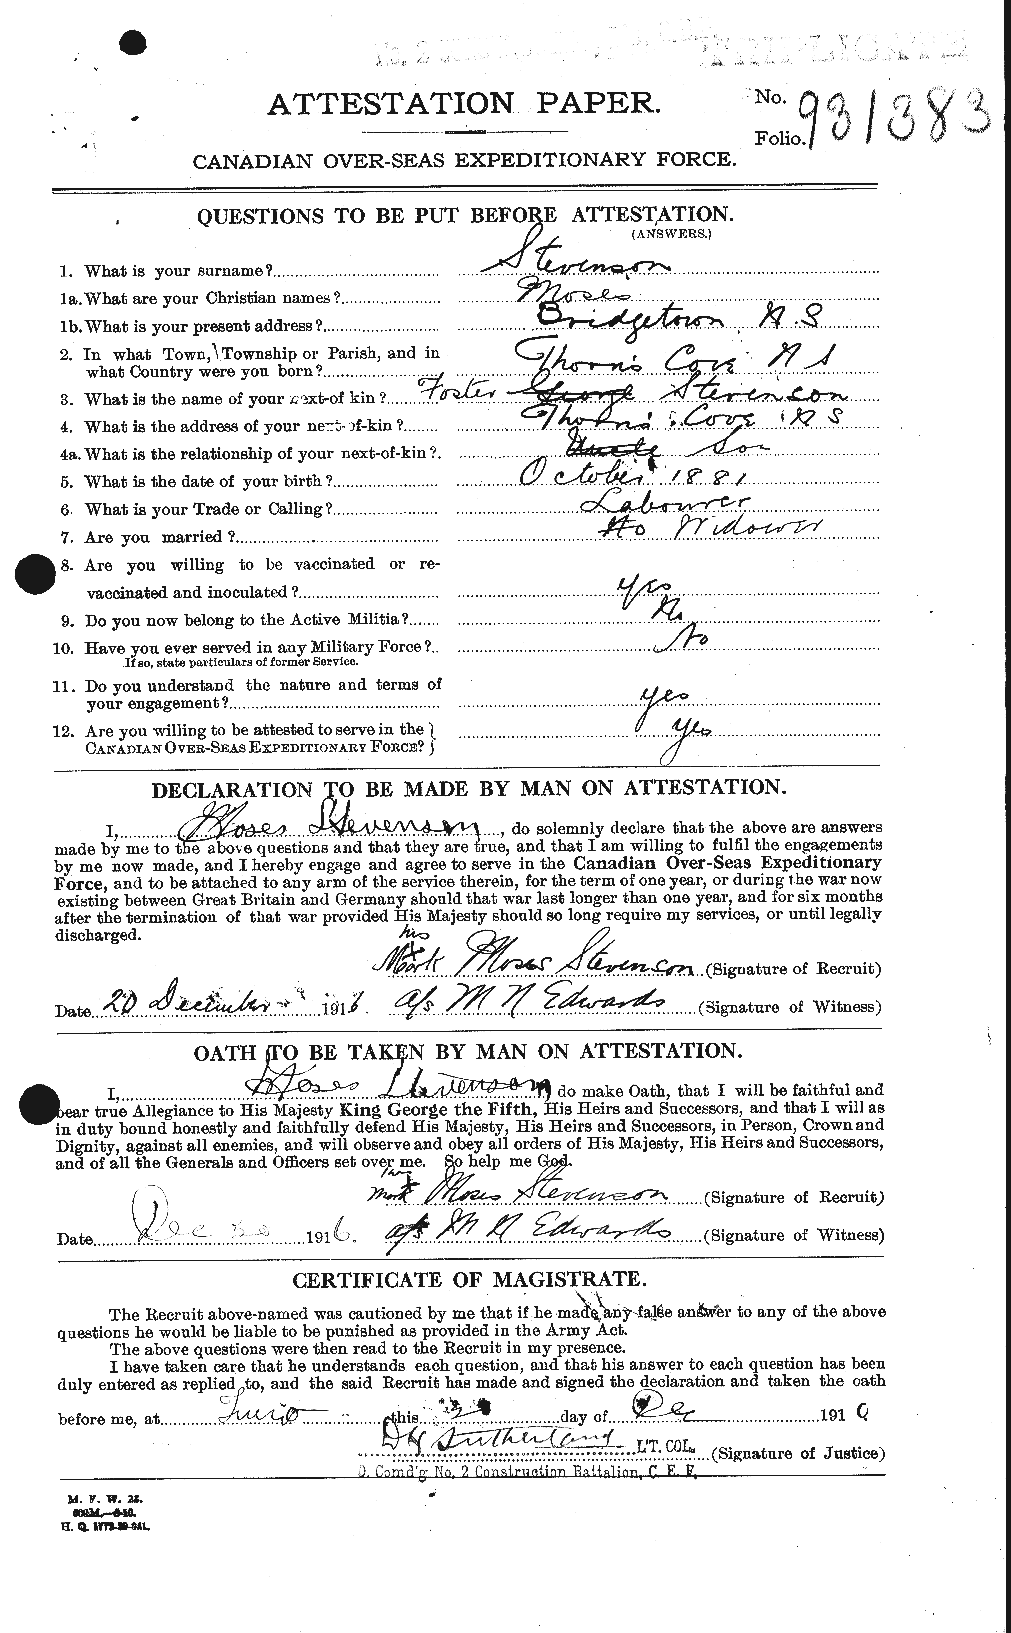 Dossiers du Personnel de la Première Guerre mondiale - CEC 118918a